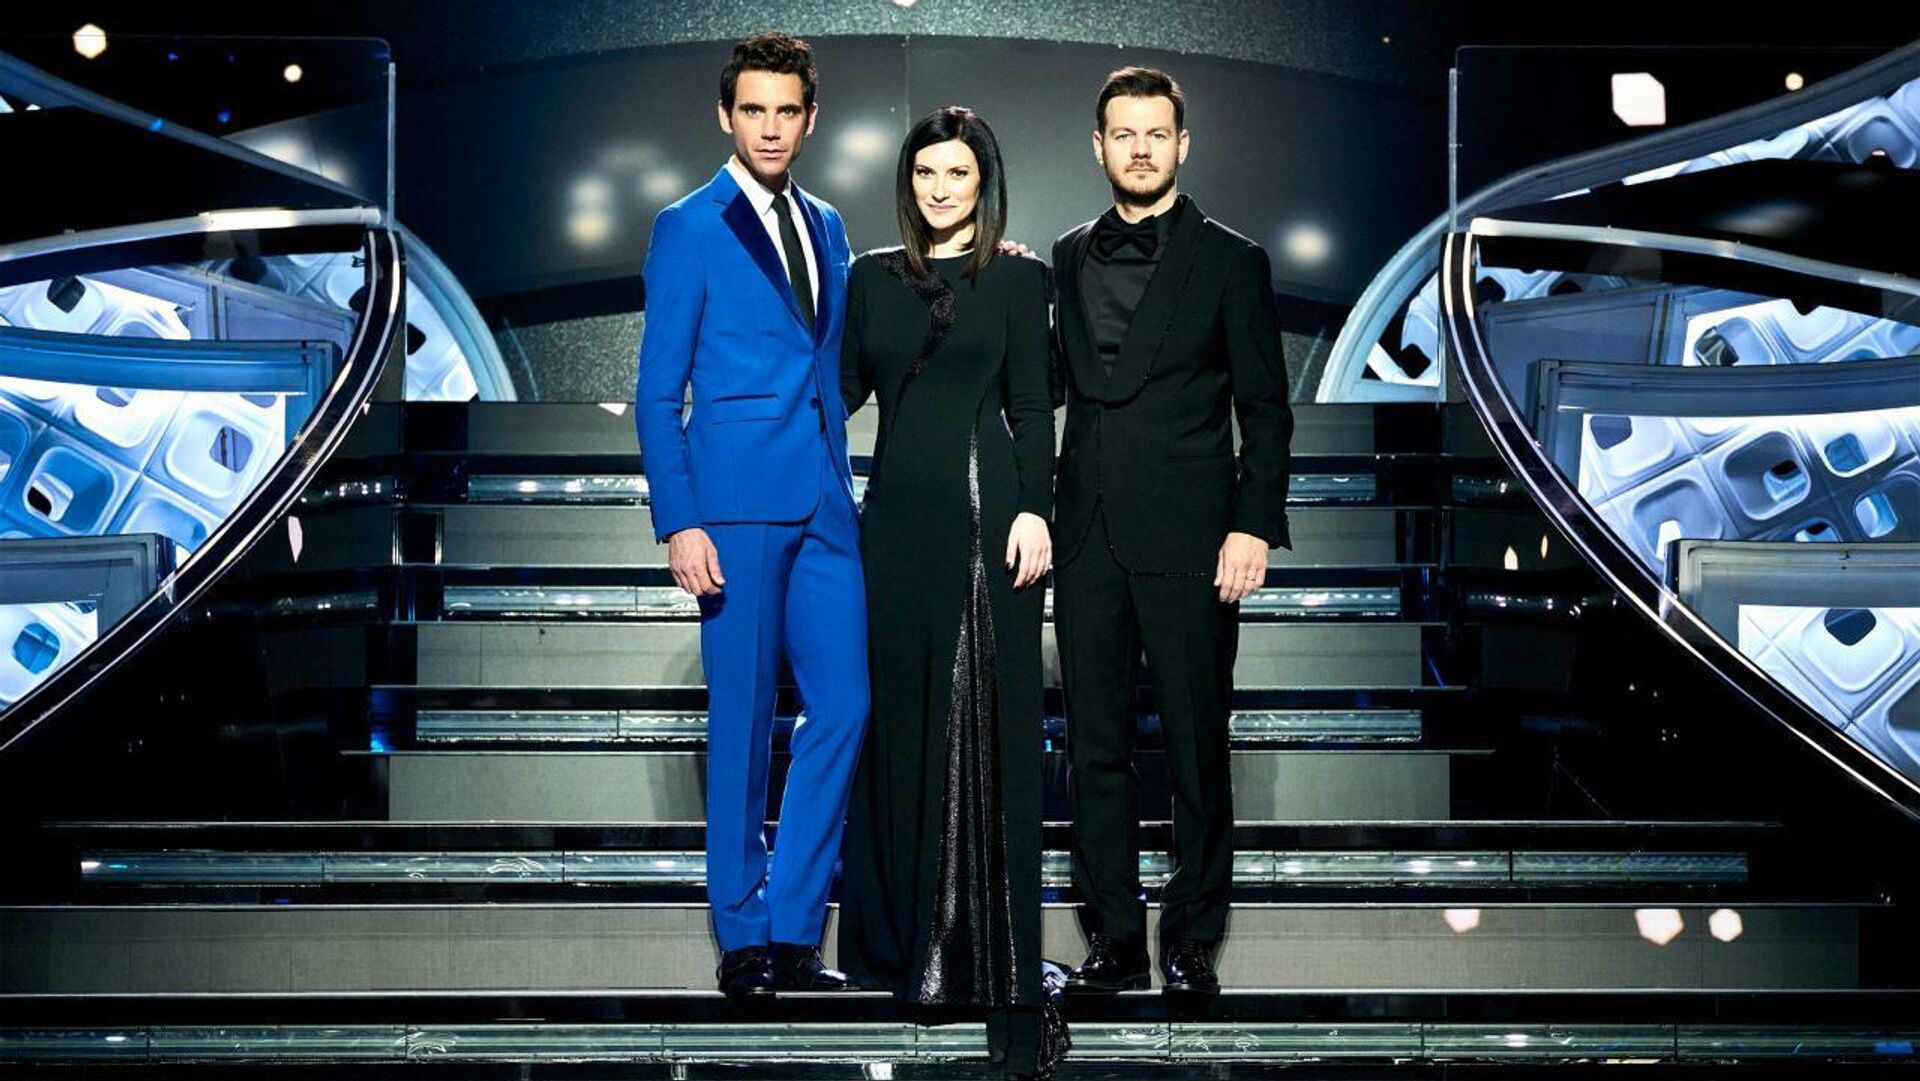 Eurovizijos-2022 vedėjai – dainininkas Mika, dainininkė Laura Pausini ir televizijos laidų vedėjas Alessandro Cattelanas - Sputnik Lietuva, 1920, 03.02.2022